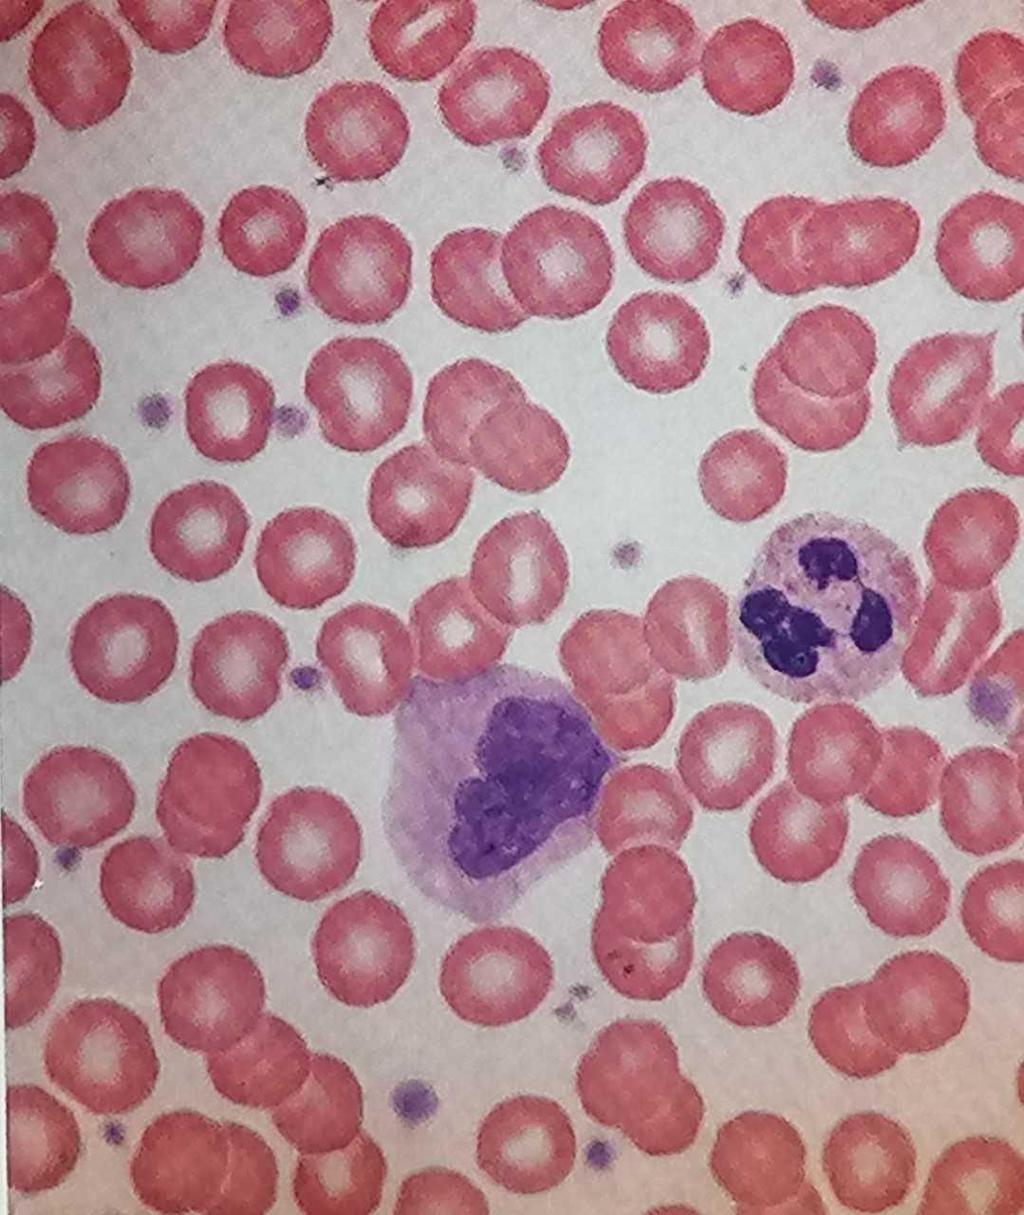 Επίχρισμα περιφερικού αίματος Ερυθρά-Red Blood cells